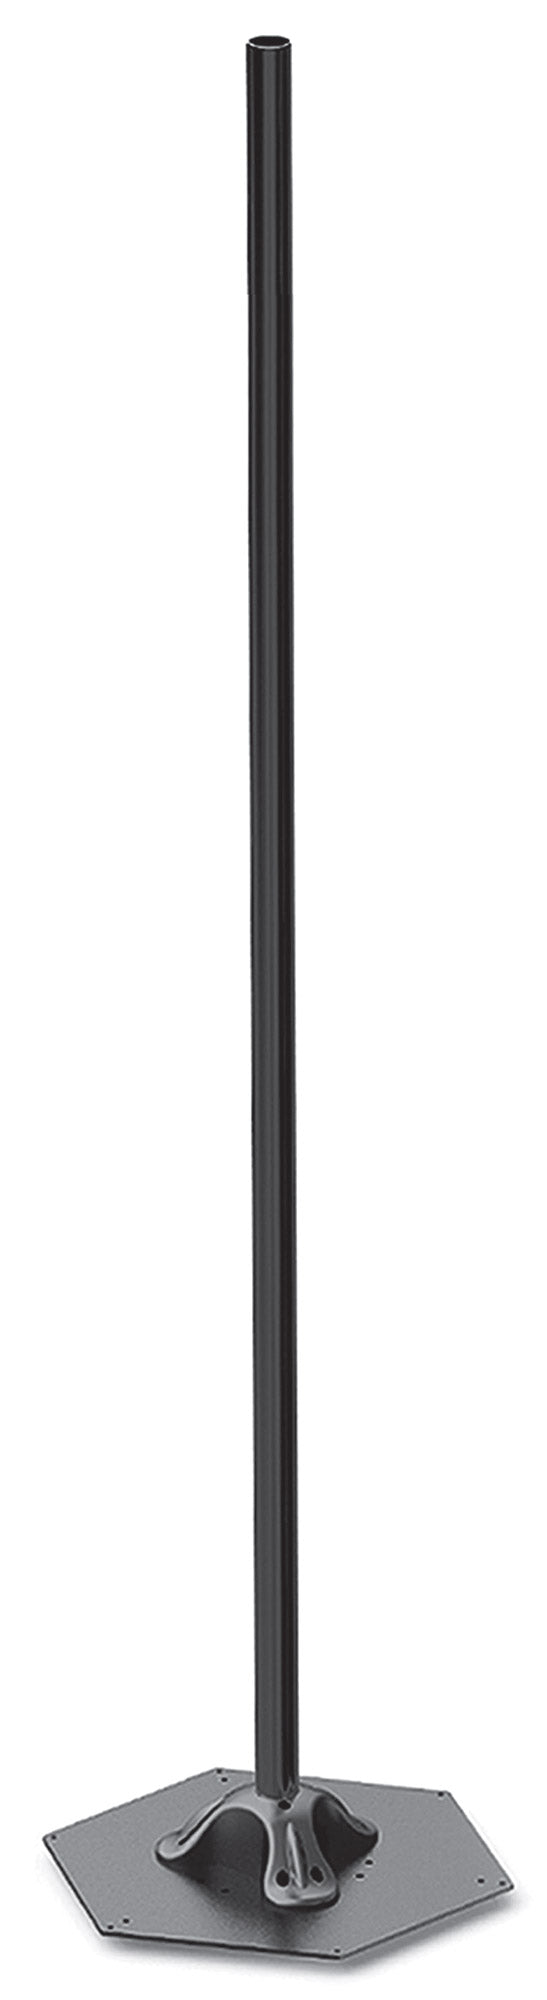 sconto Elegance Pole H214 cm pour Lampes Chauffantes Electriques Moel 4464 Noir